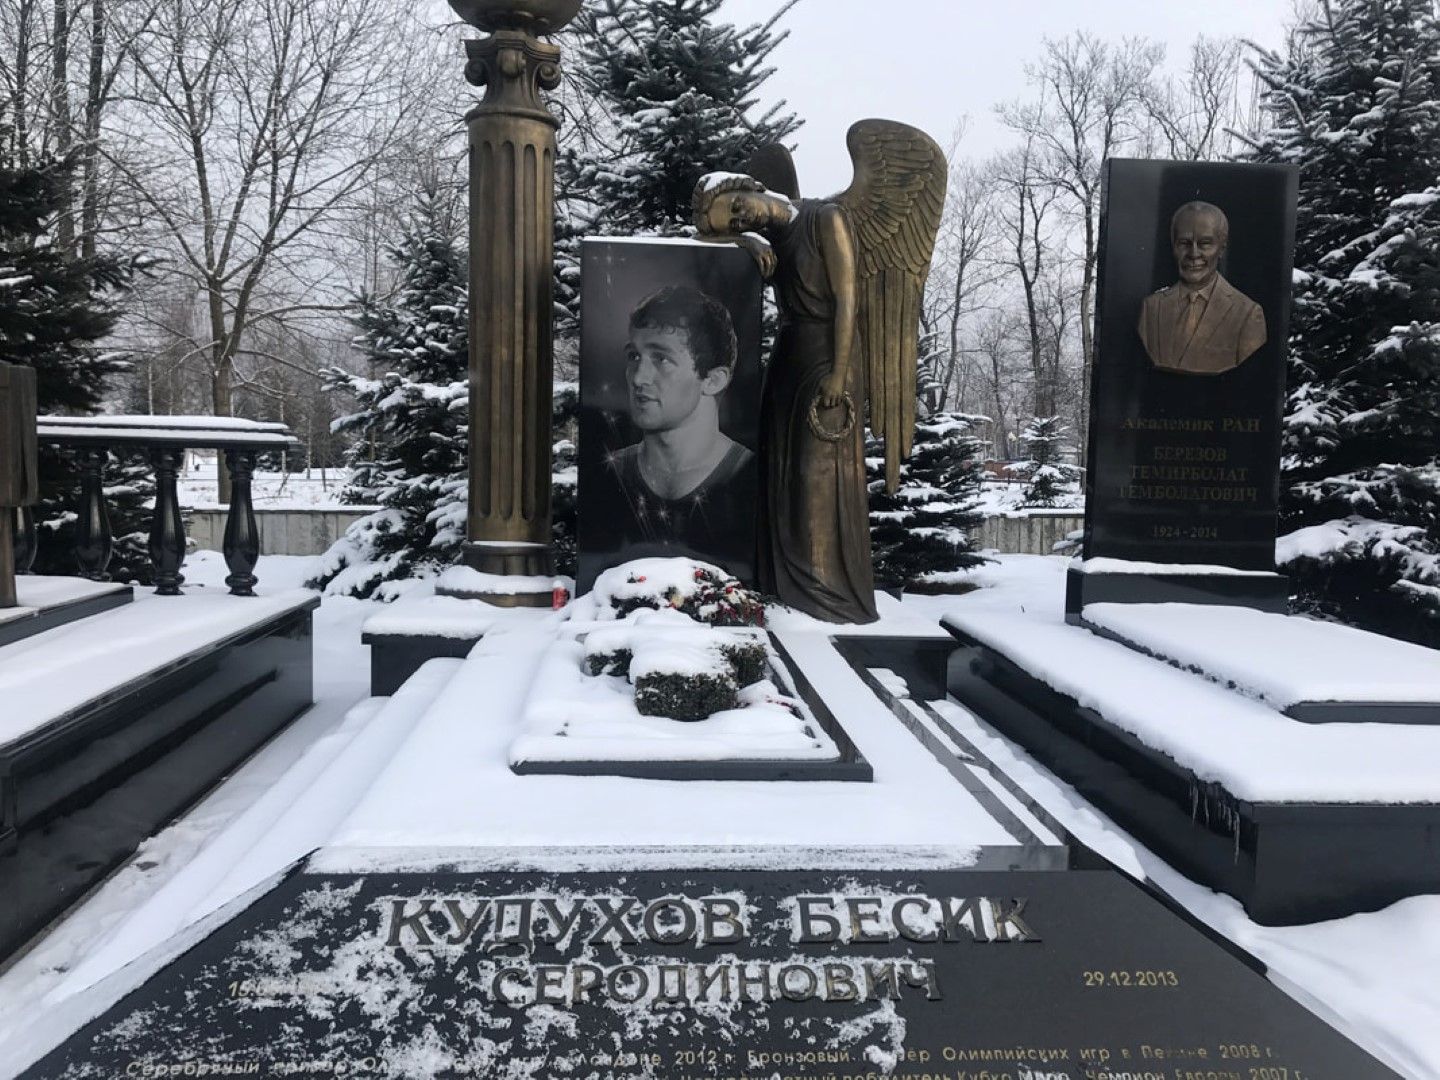 На 29 декември 2013-а, Кудухов се блъска в камоион и умира.   По това време тече допинг разследване срещу него.   Първоначално МОК не иска да отнеме медала на покойник, но го   прави през 2016-а. Борецът, който го получава - Йогешвар Дут   от Индия се отказва от него и го дарява на семейството на   Кудухов.